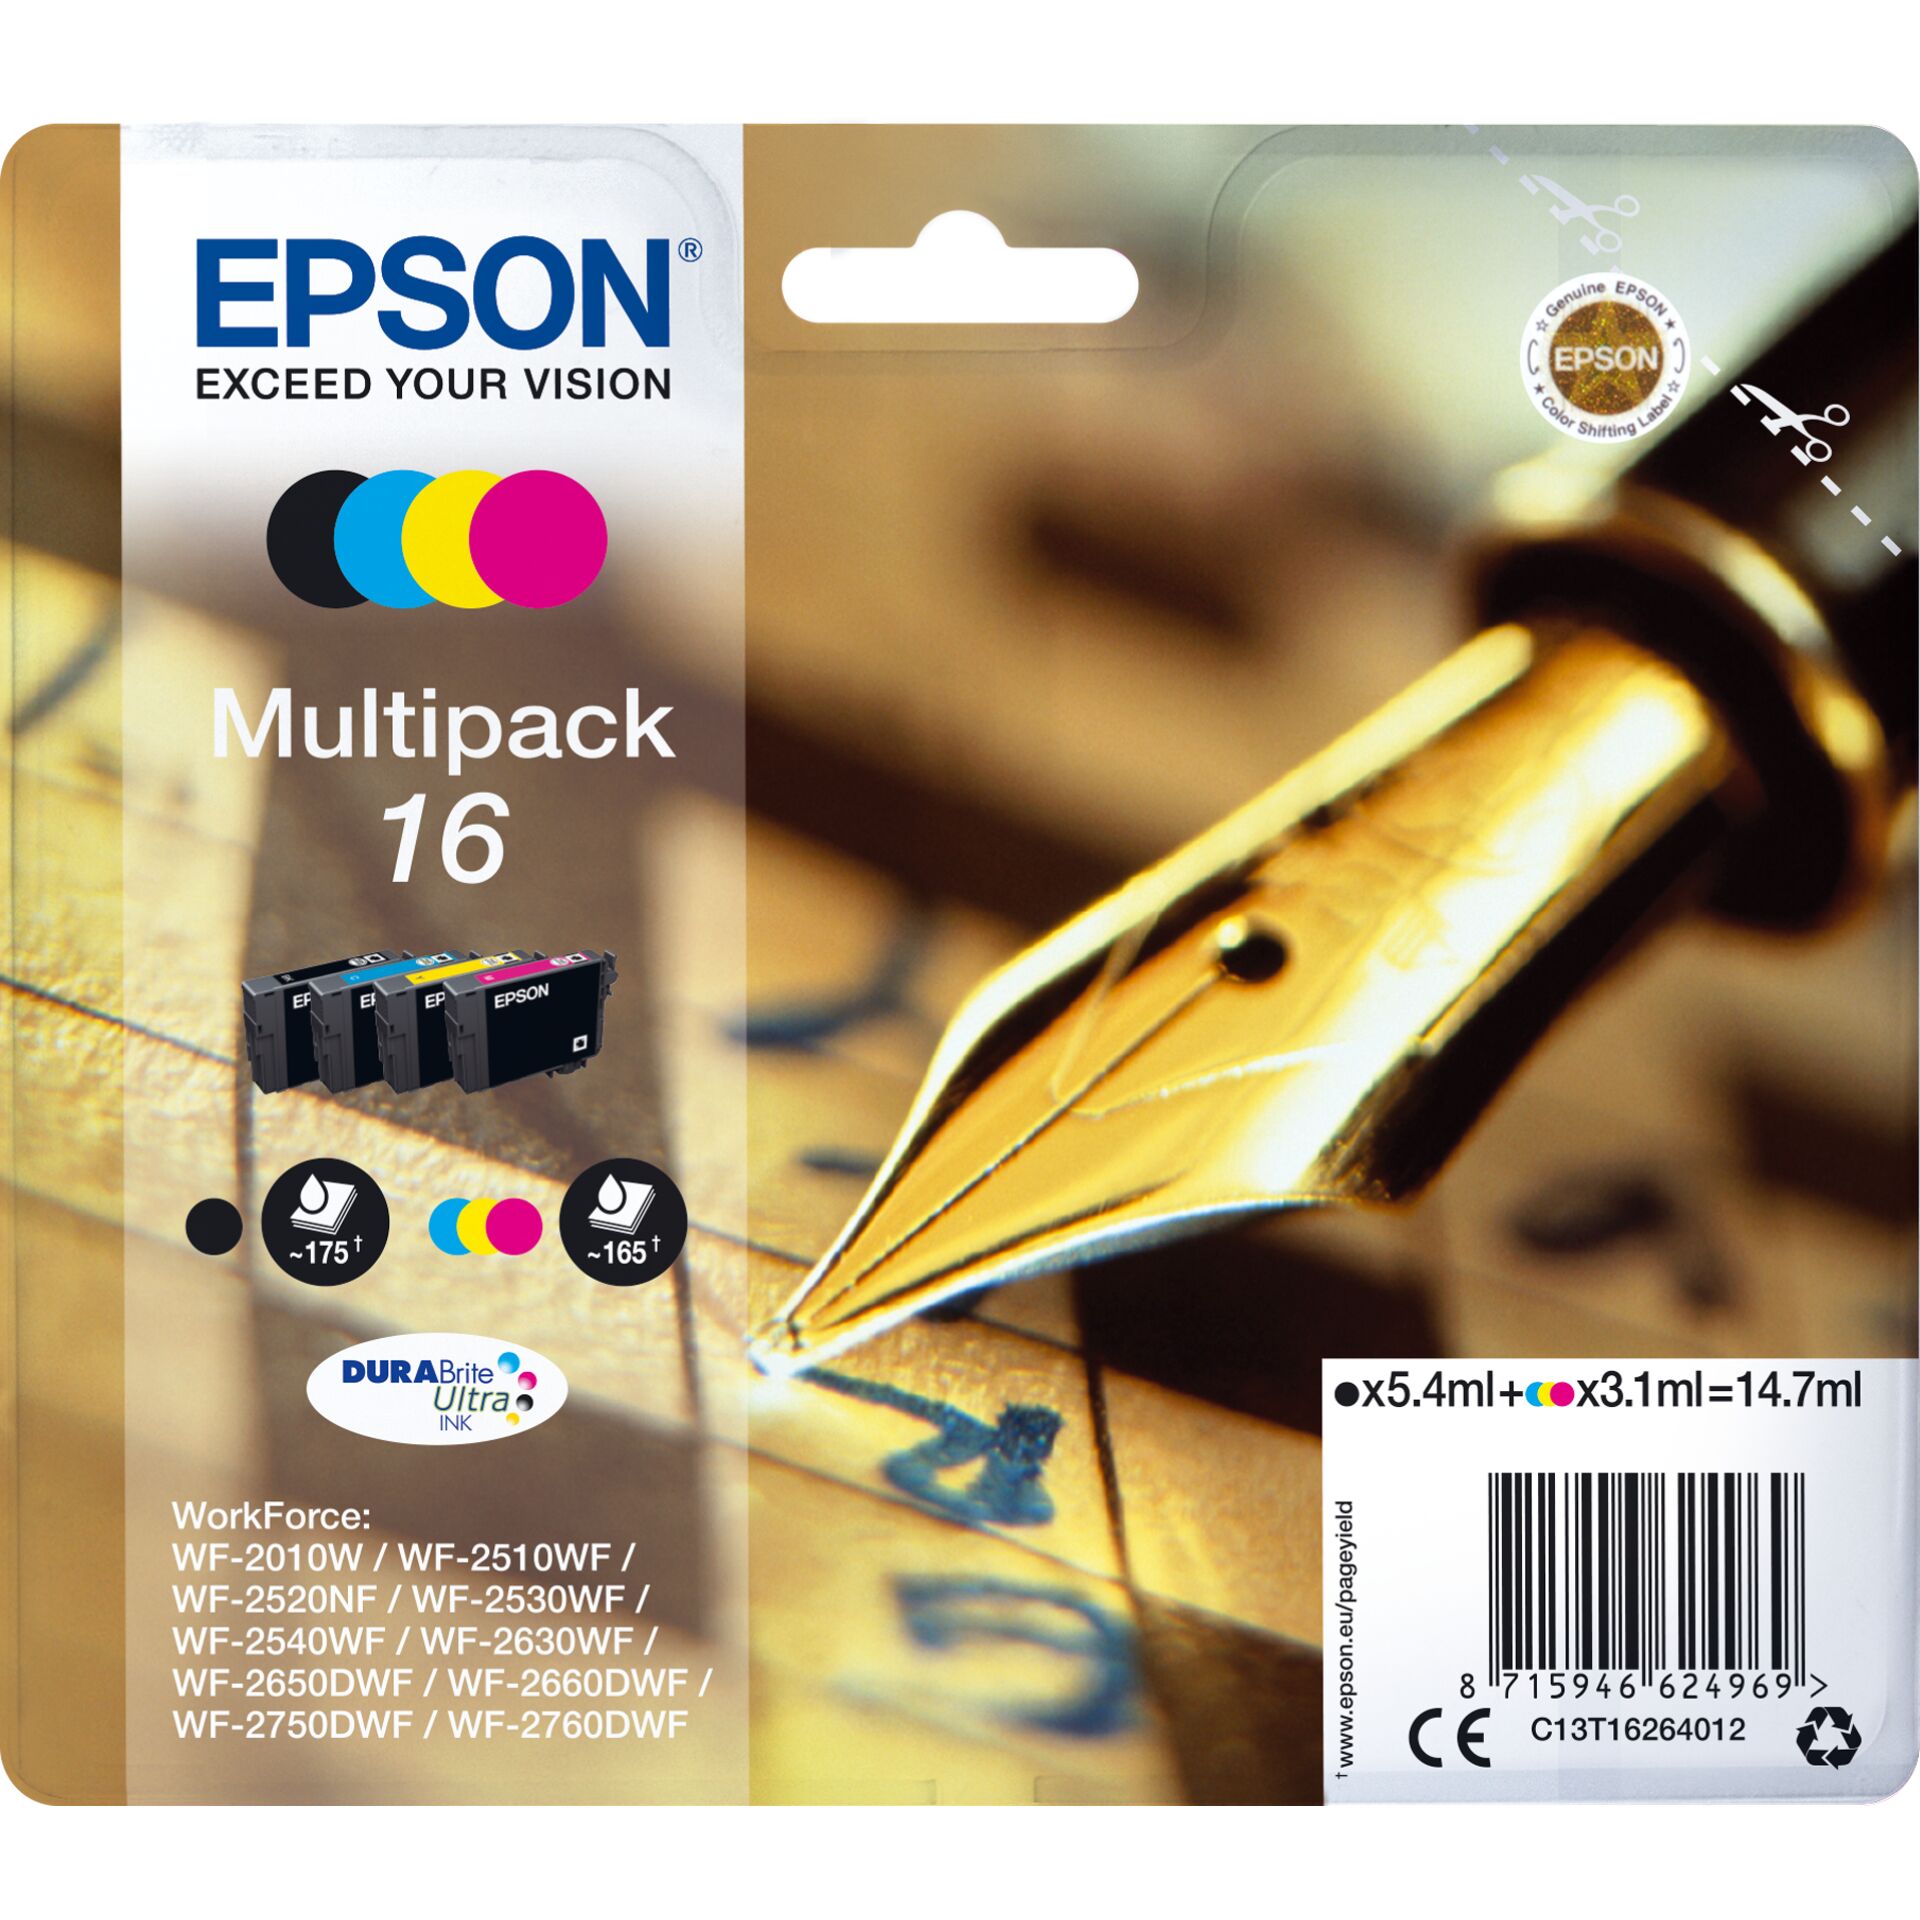 Epson Tinte 16 Multipack (schwarz, cyan, magenta, gelb) Original Zubehör